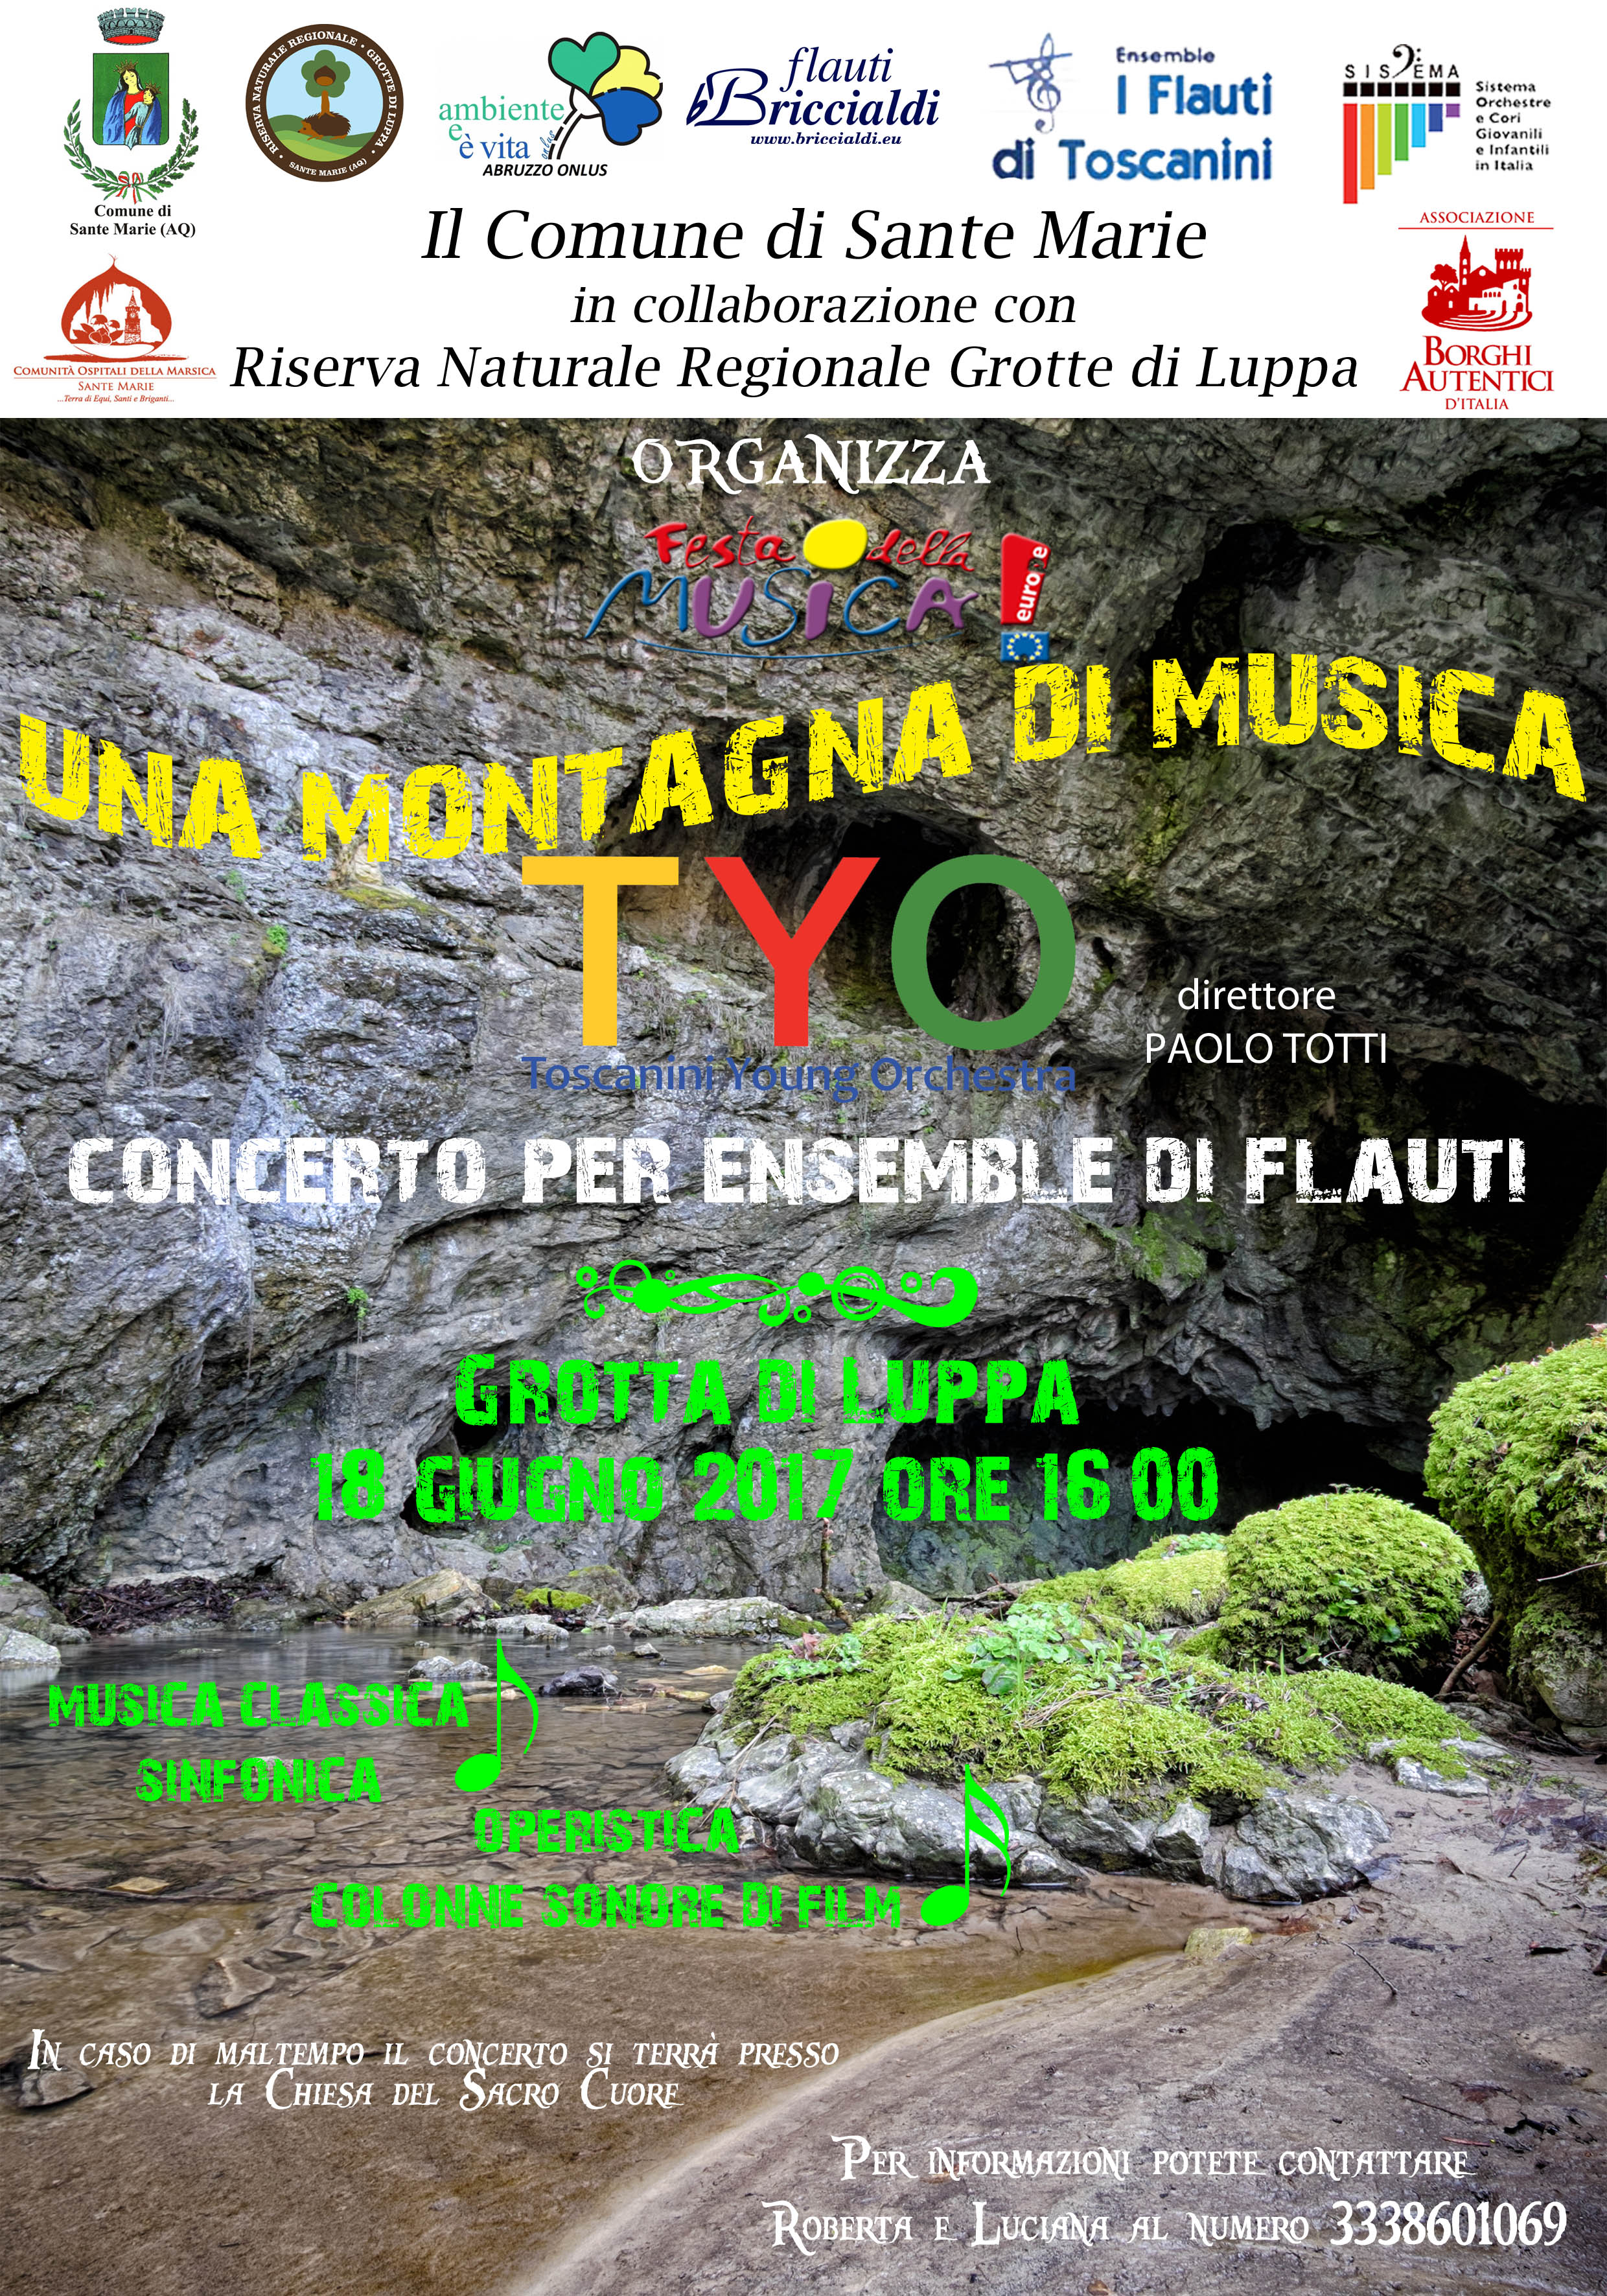 Domenica 18 Giugno "Giornata Europea della Musica" nella Riserva Regionale "Grotta di Luppa" di Sante Marie